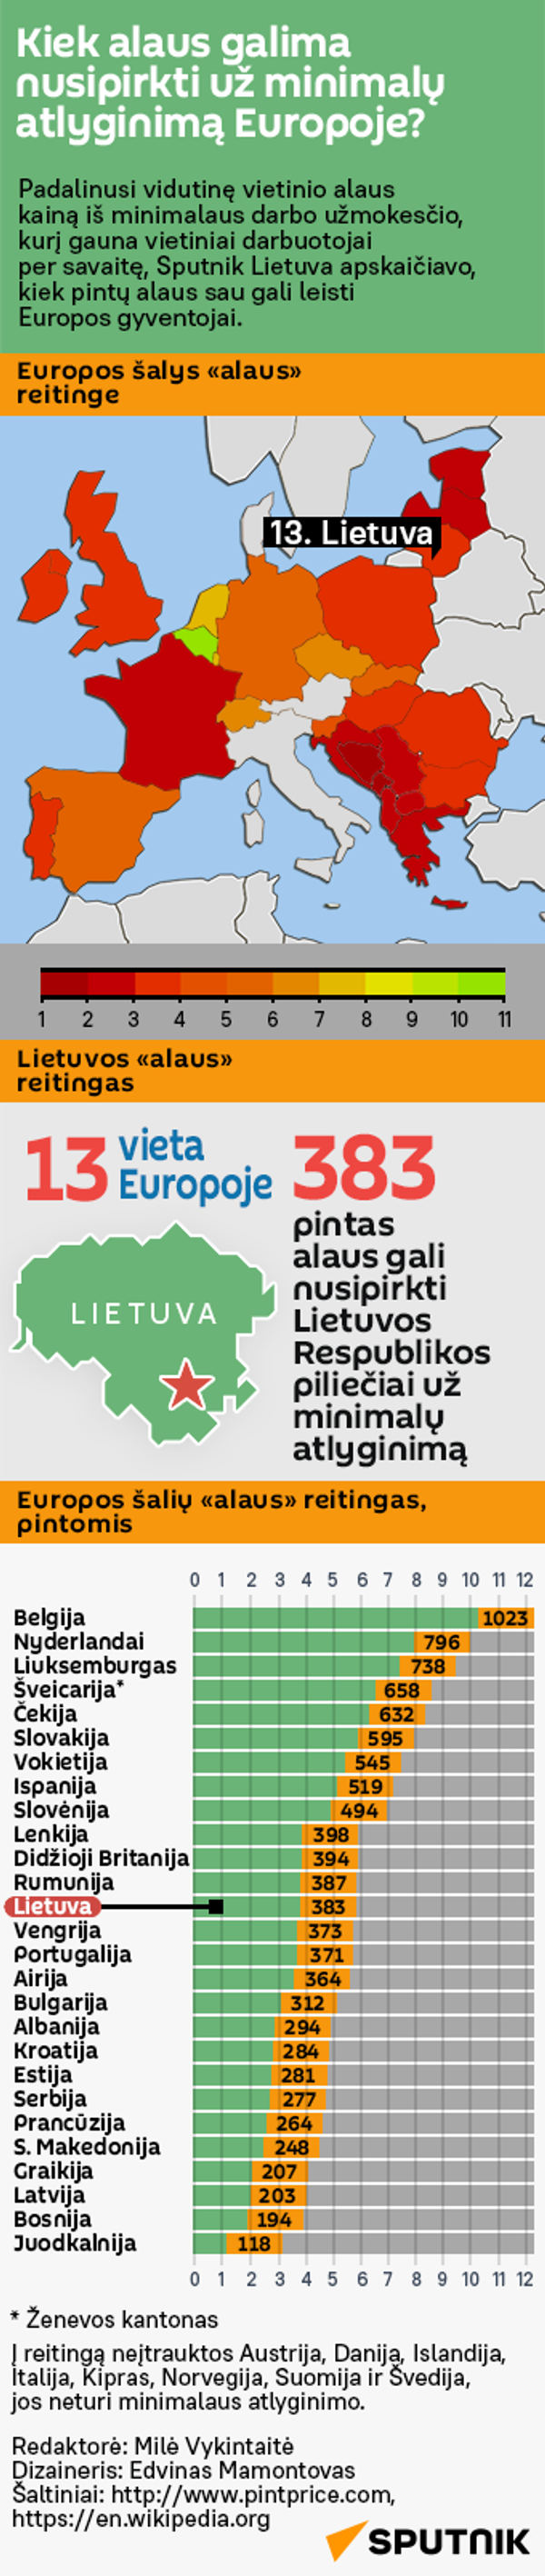 Kiek alaus galima nusipirkti už minimalų atlyginimą Europoje? - Sputnik Lietuva